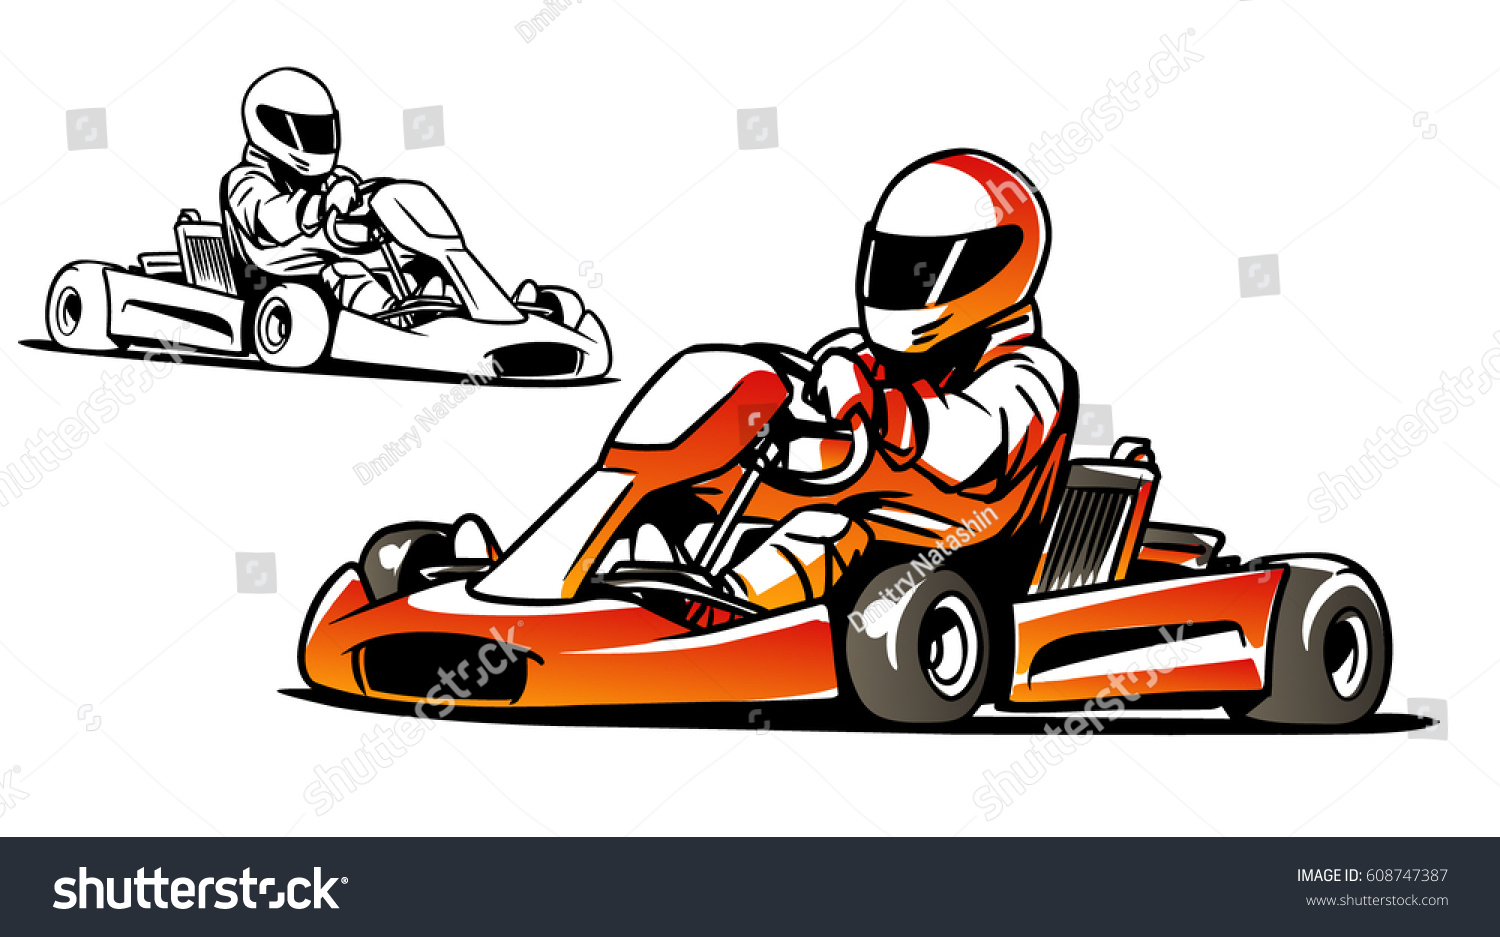 Go Kart Kart Racing Stock Vector 608747387 - Shutterstock